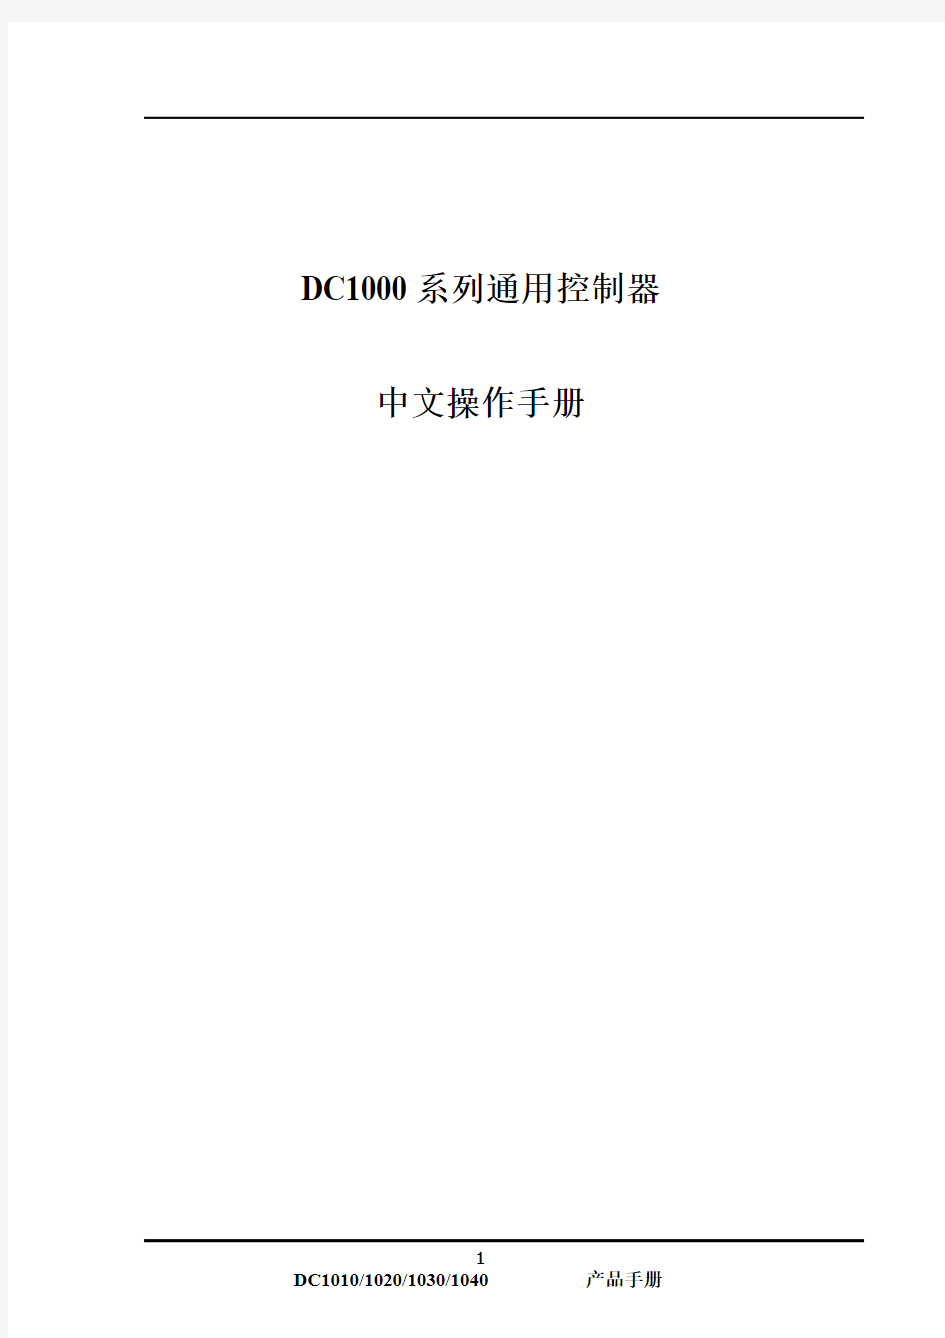 霍尼韦尔DC1000系列操作手册中文版